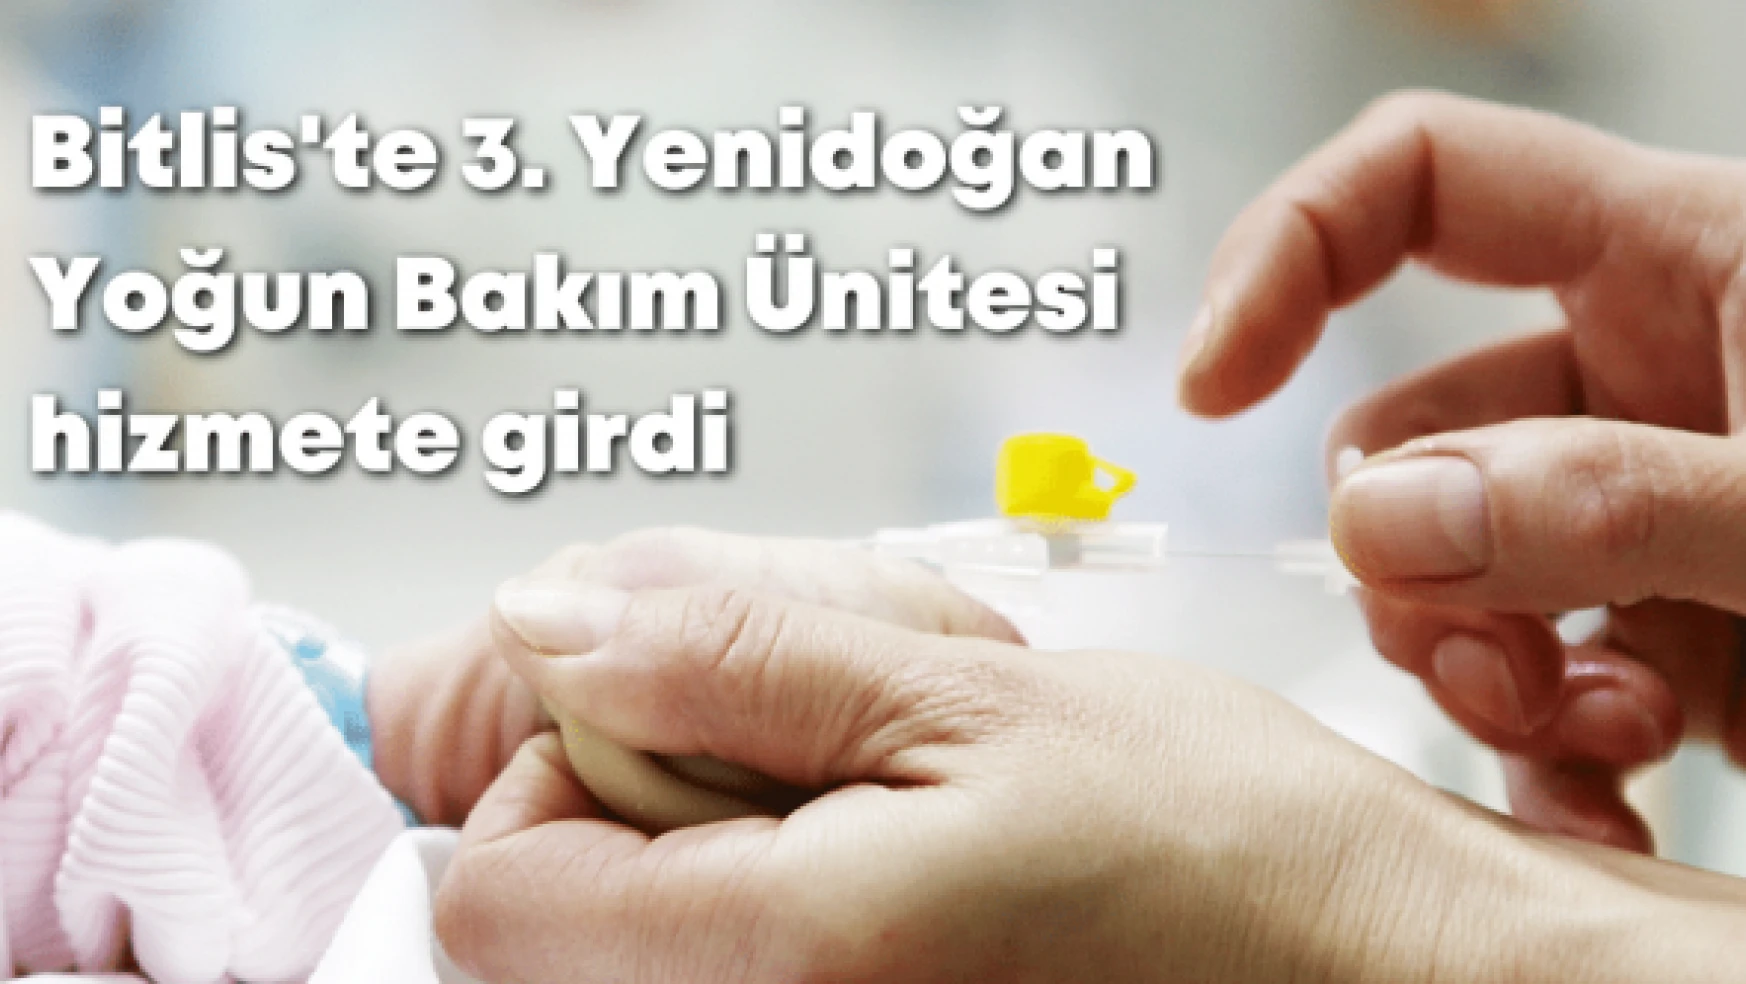 Bitlis'te 3. Yenidoğan Yoğun Bakım Ünitesi hizmete girdi